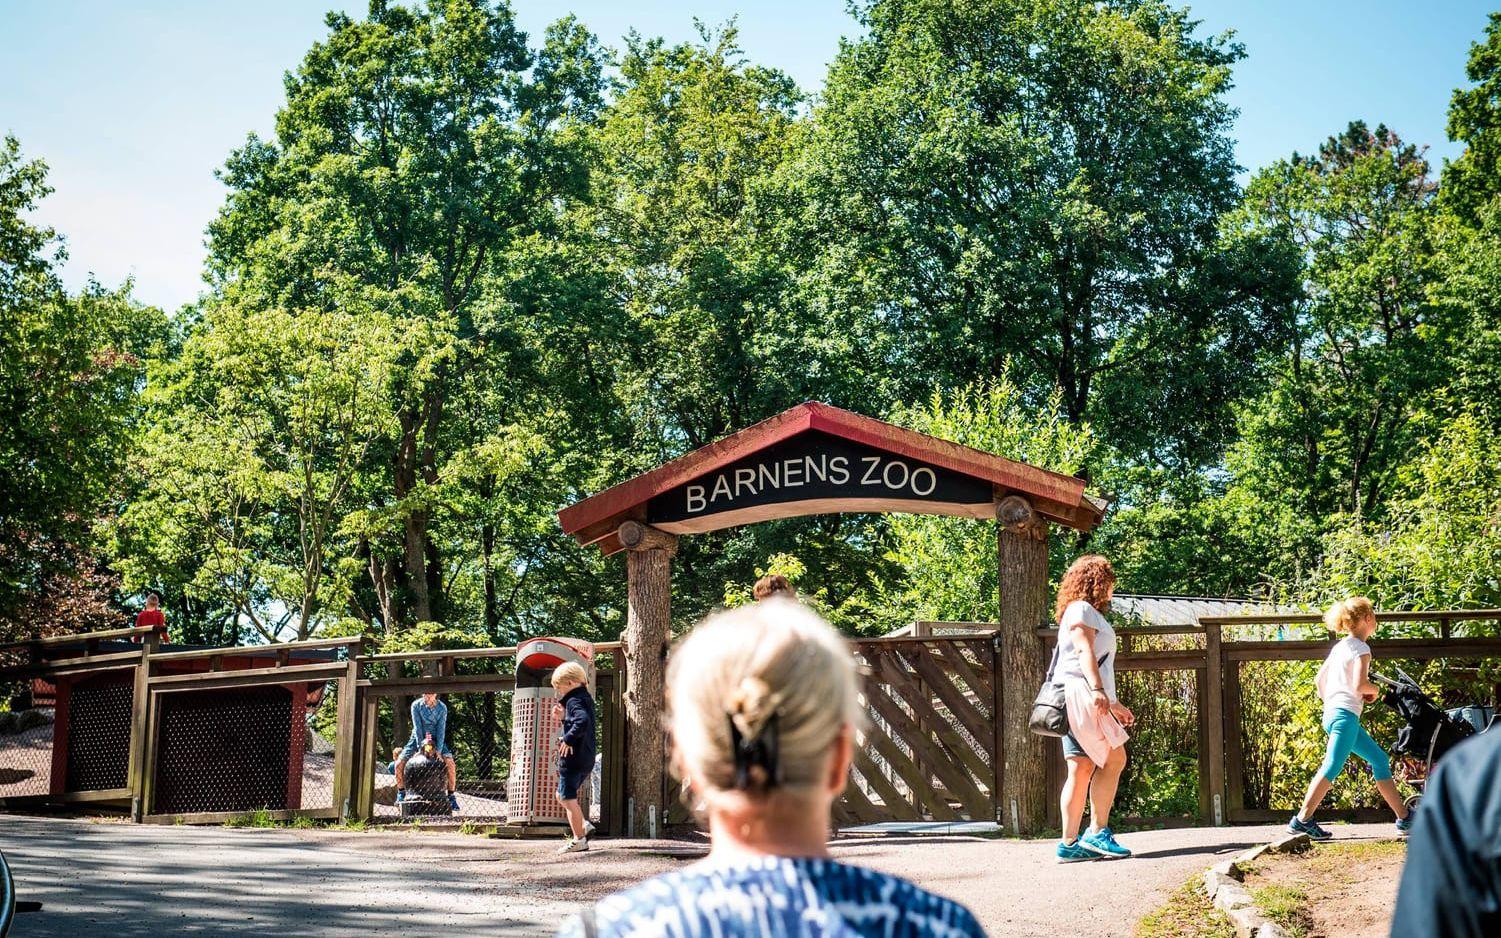 På Barnens zoo finns bland annat svenska lantraser som Gutefår och Orusthöna. Bild: Olof Ohlsson